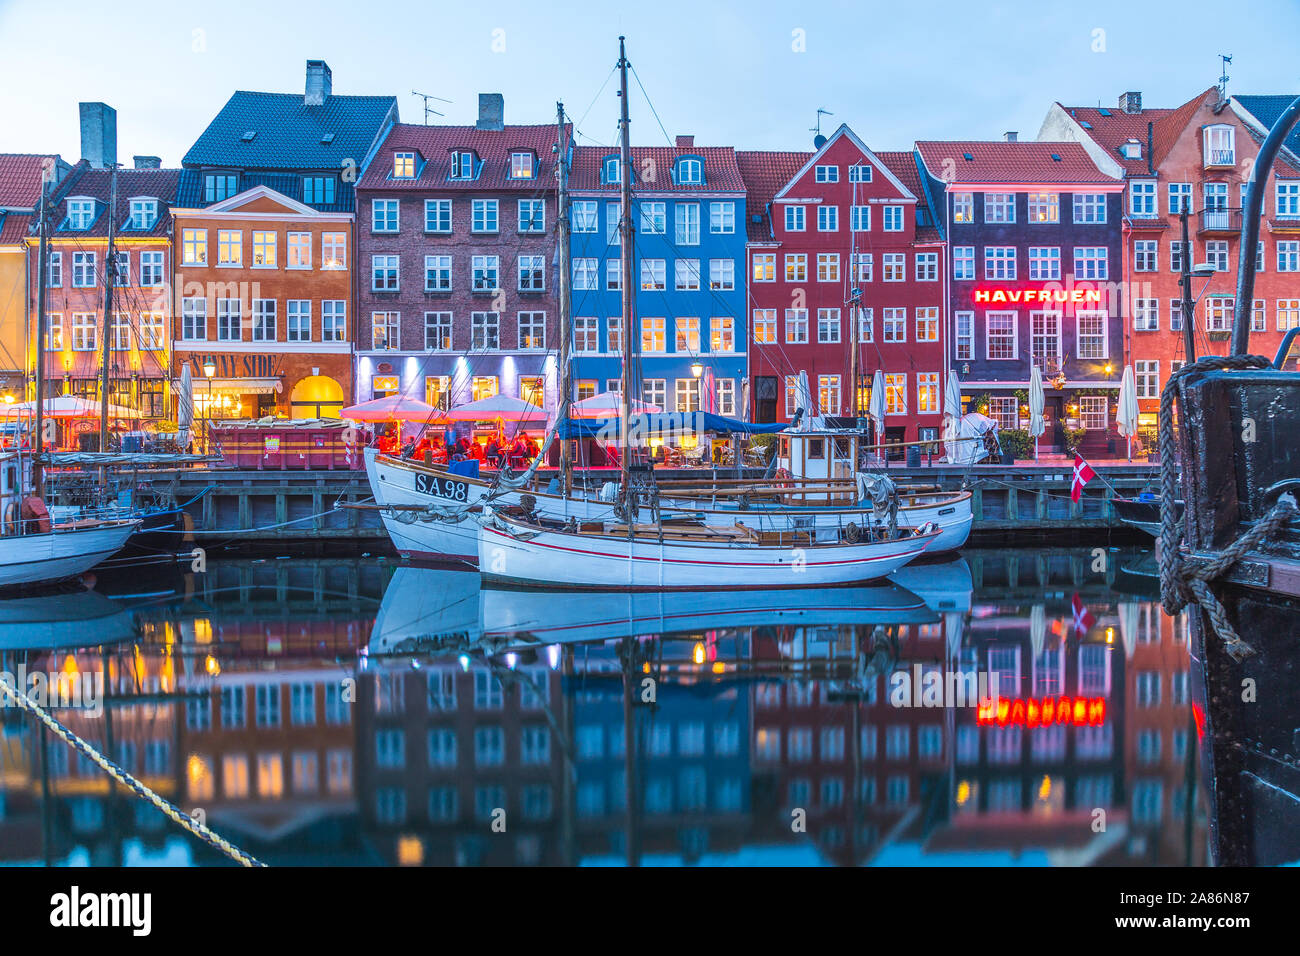 COPENHAGEN, Danimarca - 22 Maggio 2017: Architettura e barche lungo Nyhavn in prima serata. Le riflessioni e le persone possono essere visti. Foto Stock